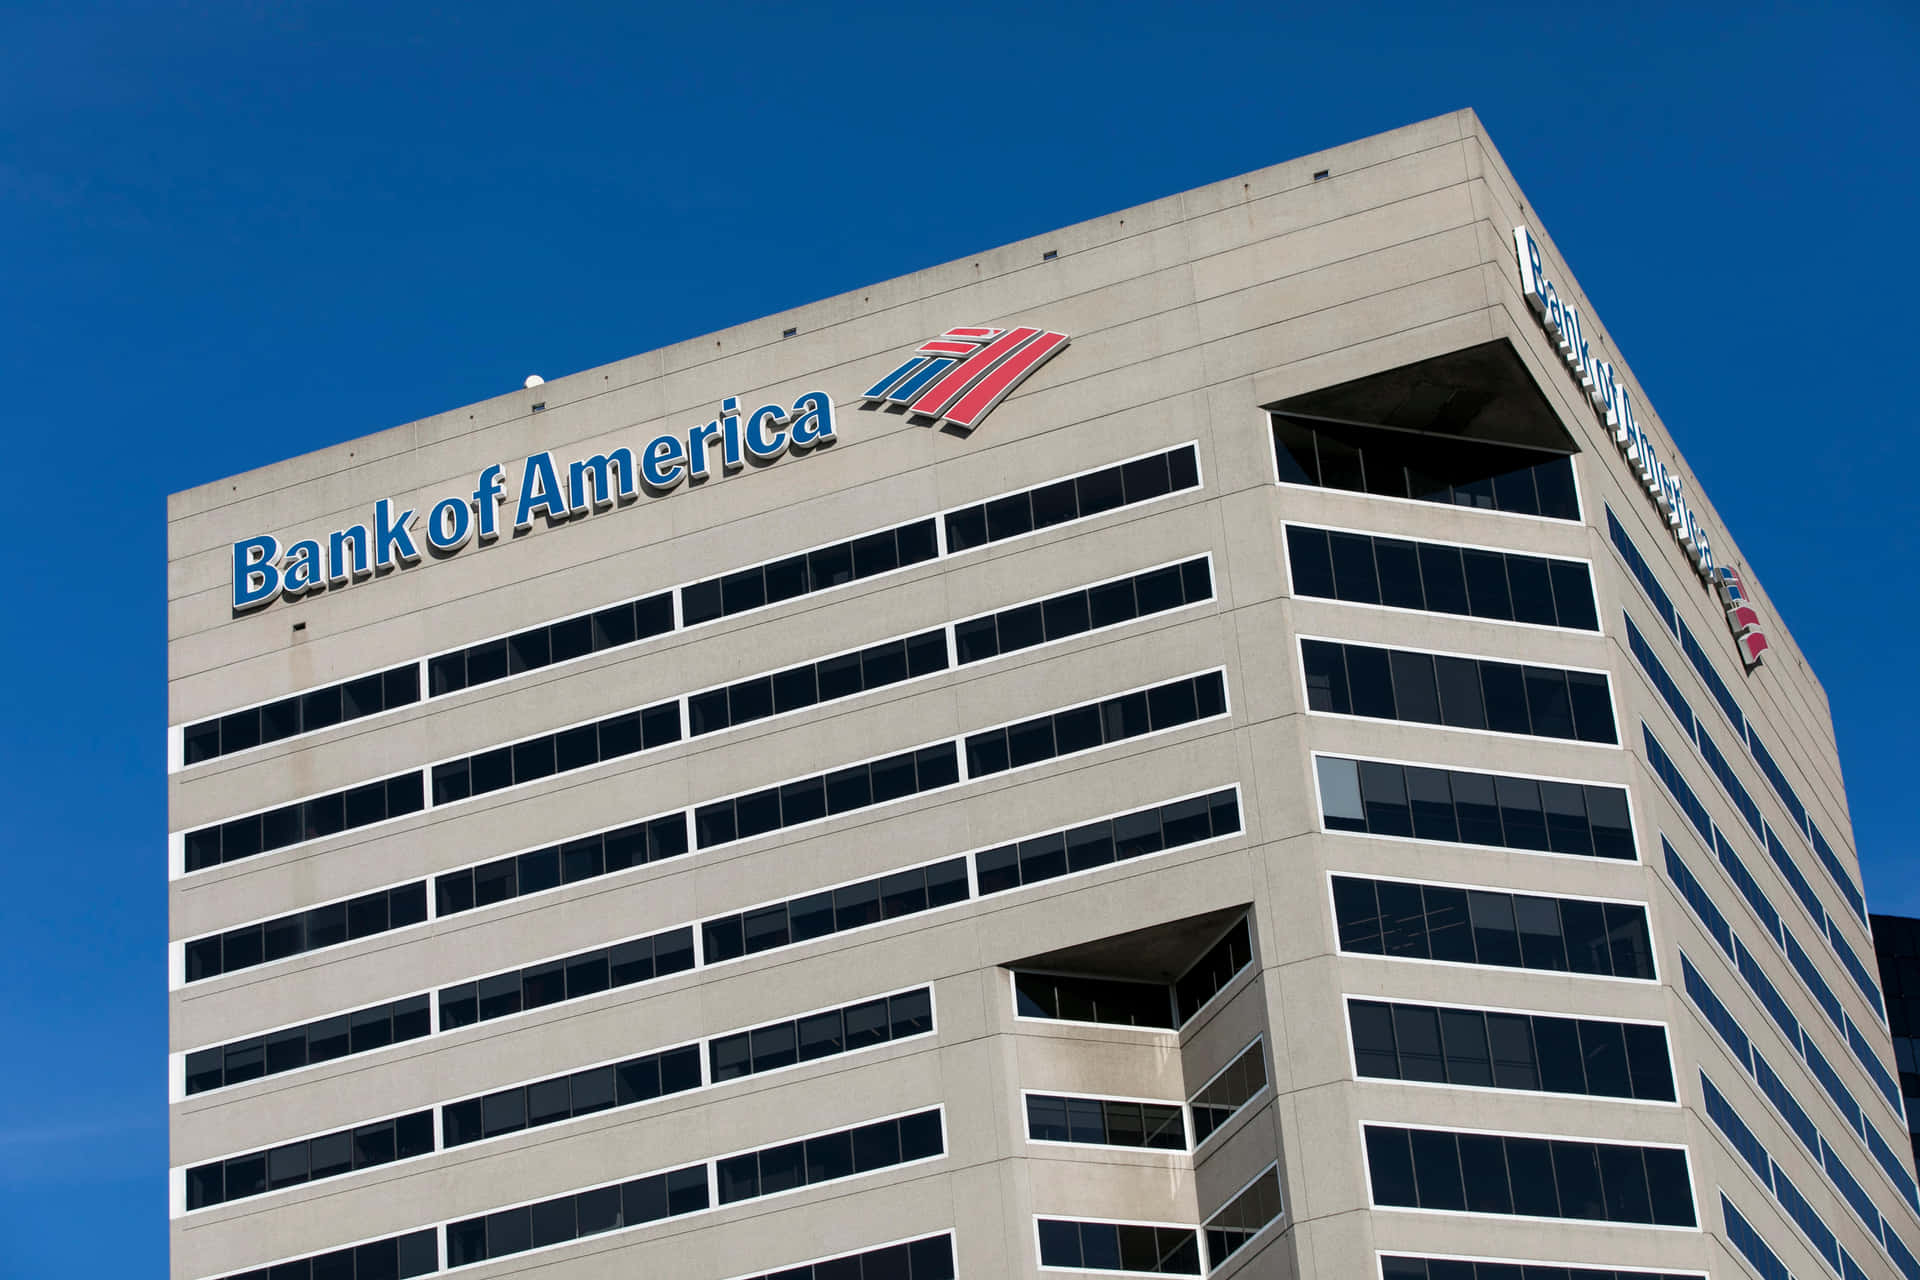 Bankof America Te Ayuda A Simplificar Tu Vida Financiera.